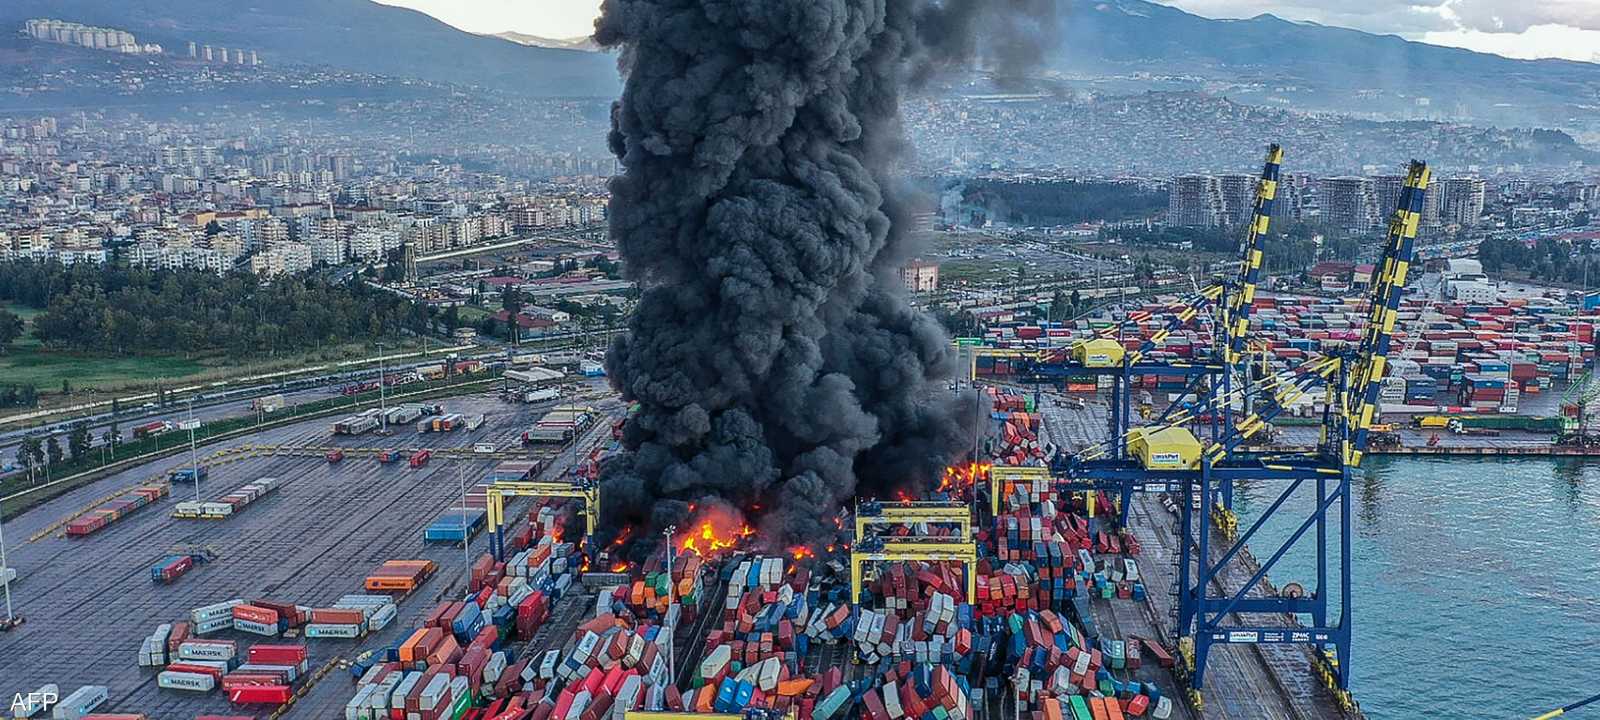 دخان يتصاعد من الحاويات المحترقة في ميناء إسكندرون التركي